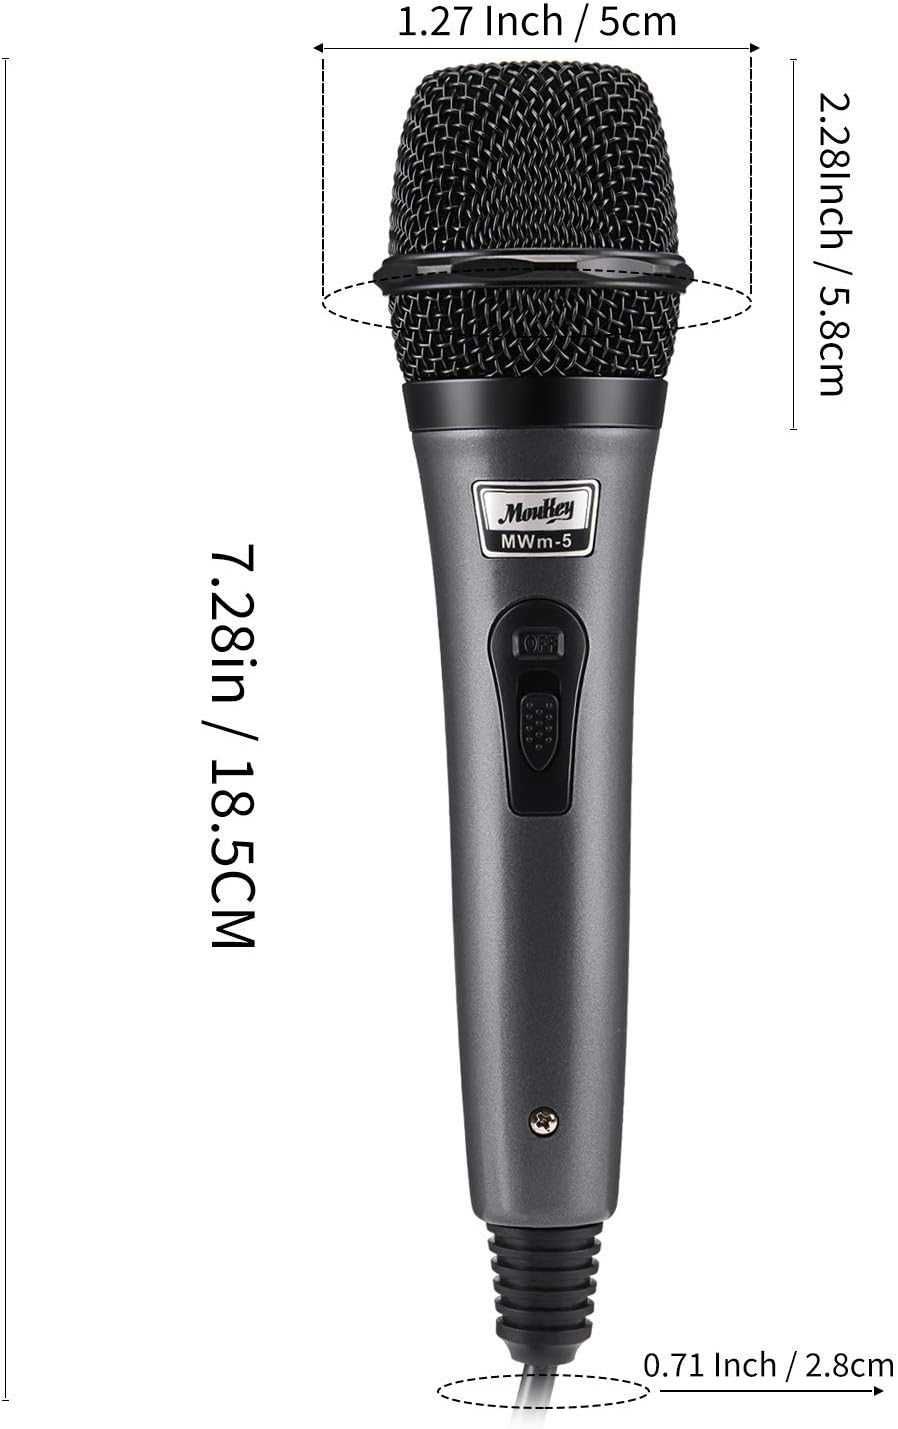 Динамический микрофон Moukey, микрофон для караоке с кабелем